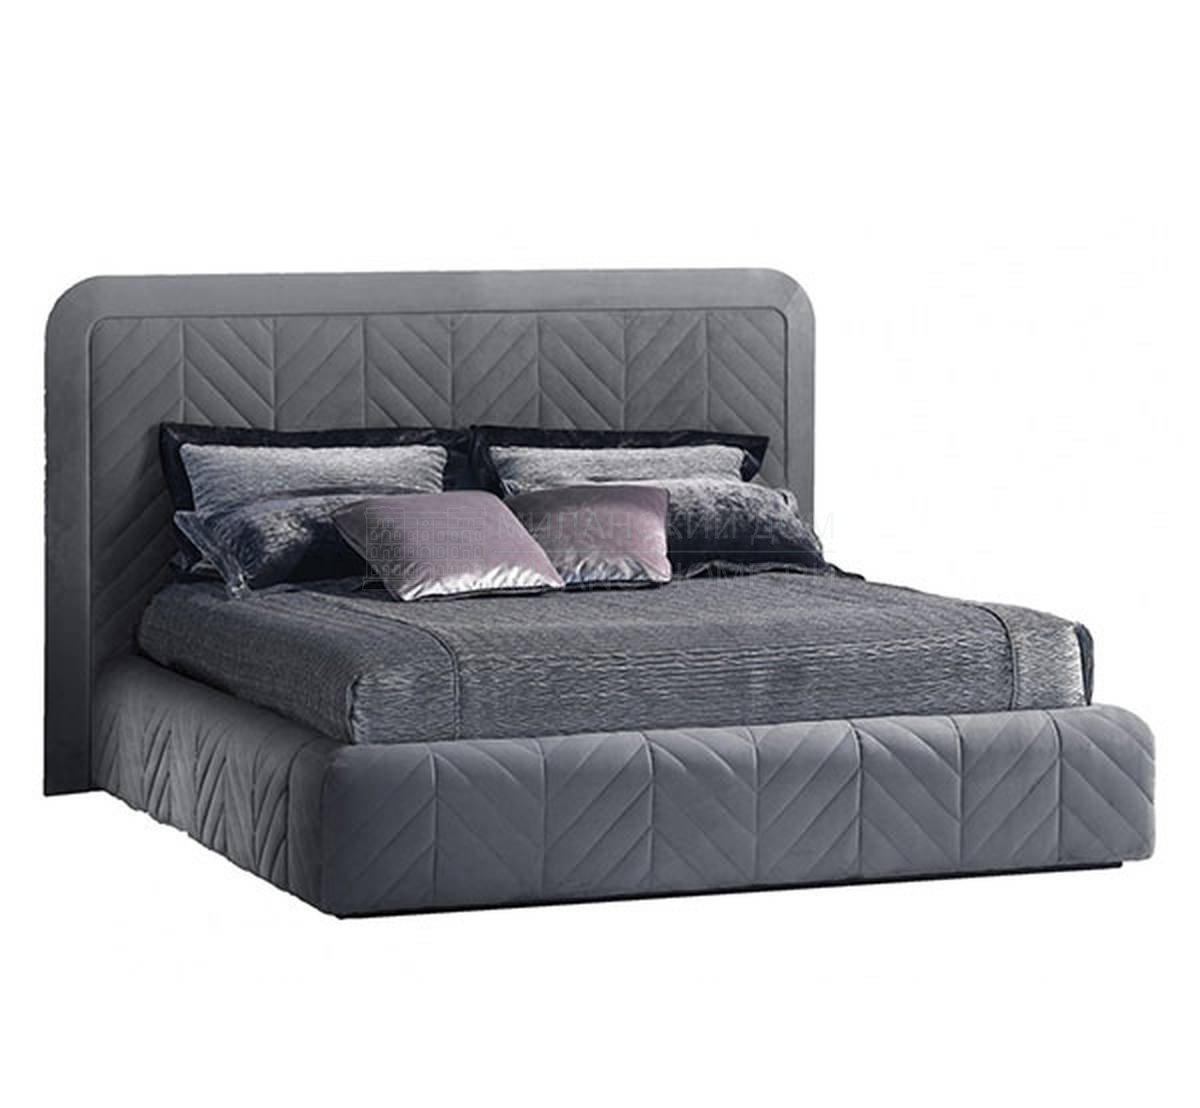 Кровать с мягким изголовьем Harrison 245 из Италии фабрики SMANIA